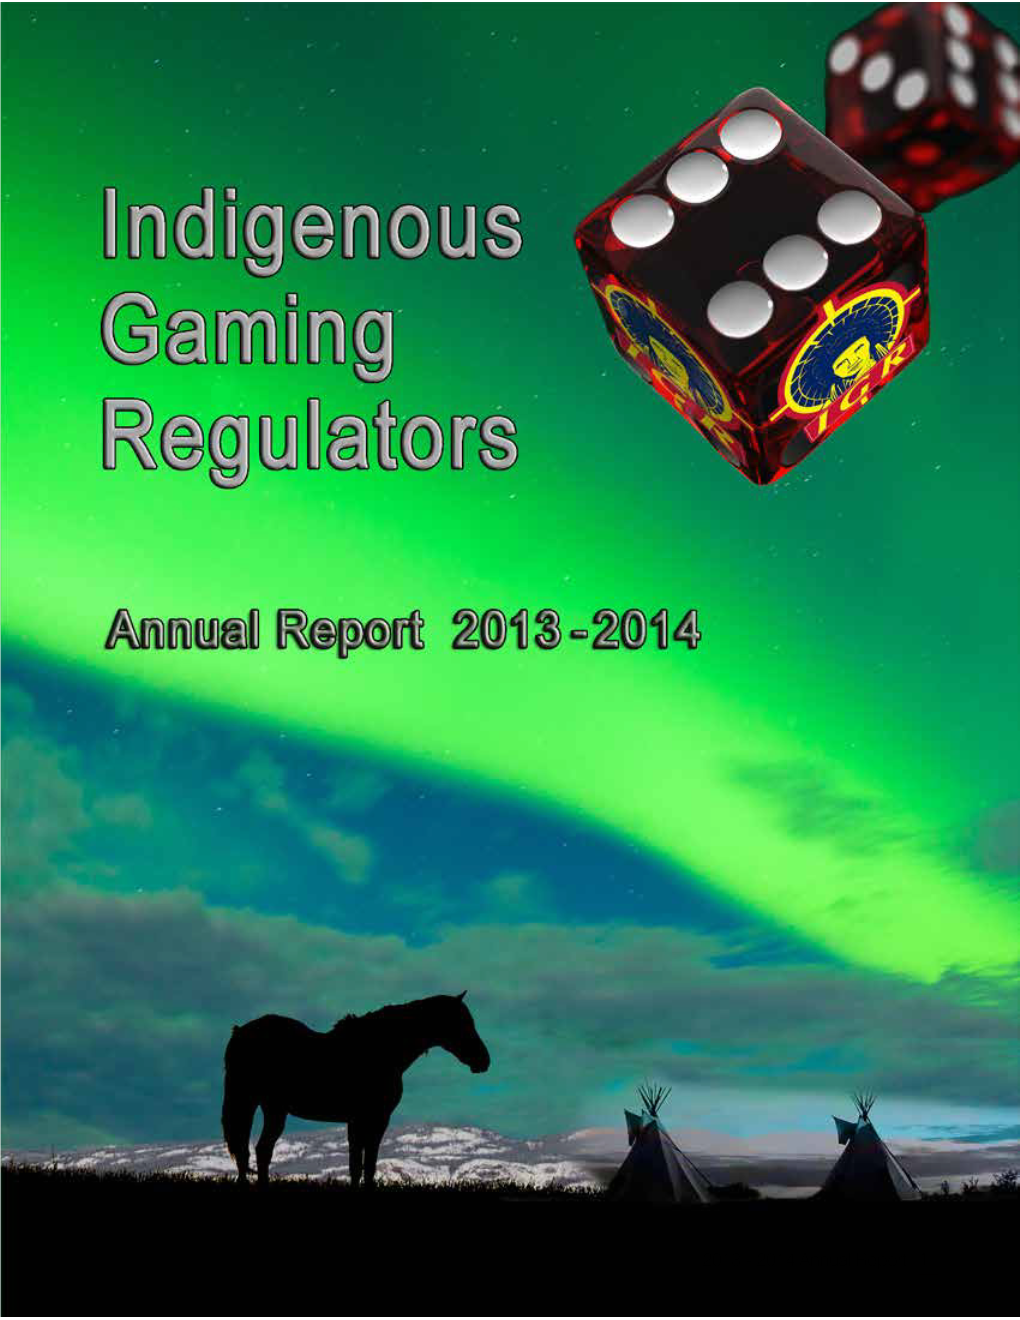 IGR 2013-2014 Annual Report